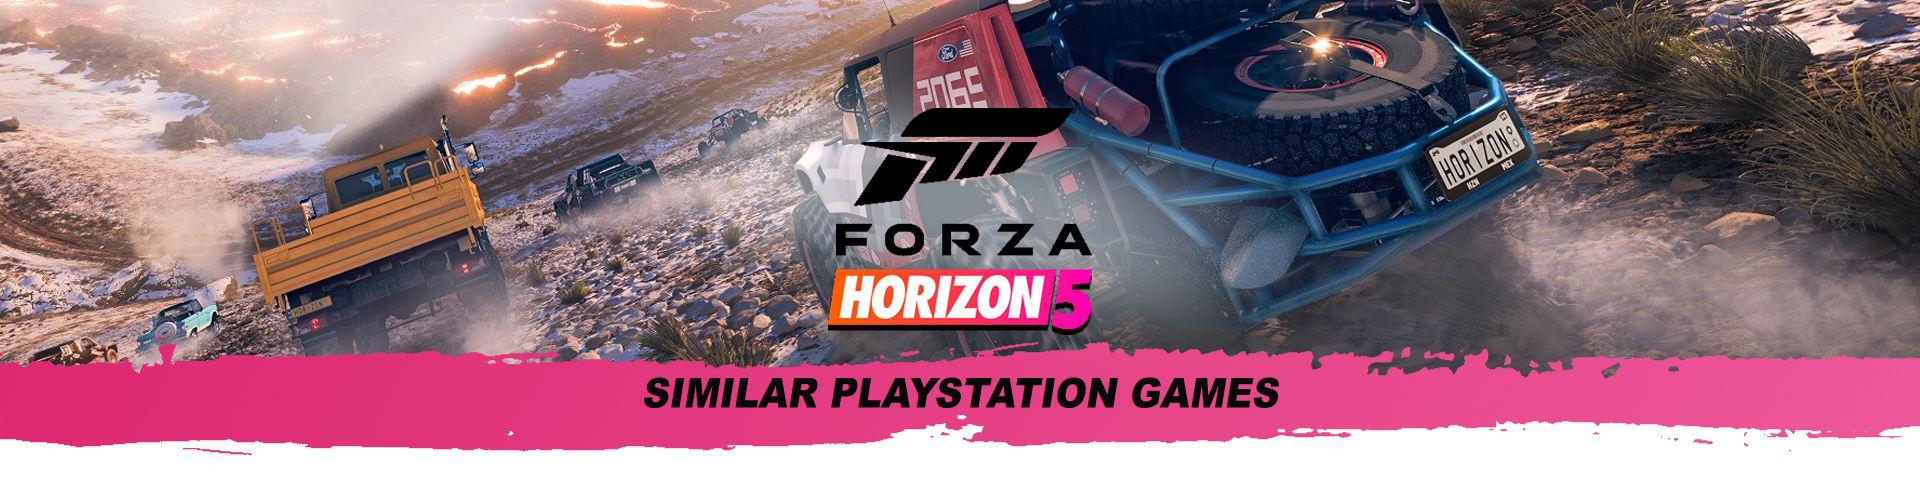 I migliori giochi come Forza Horizon su PS4 e PS5